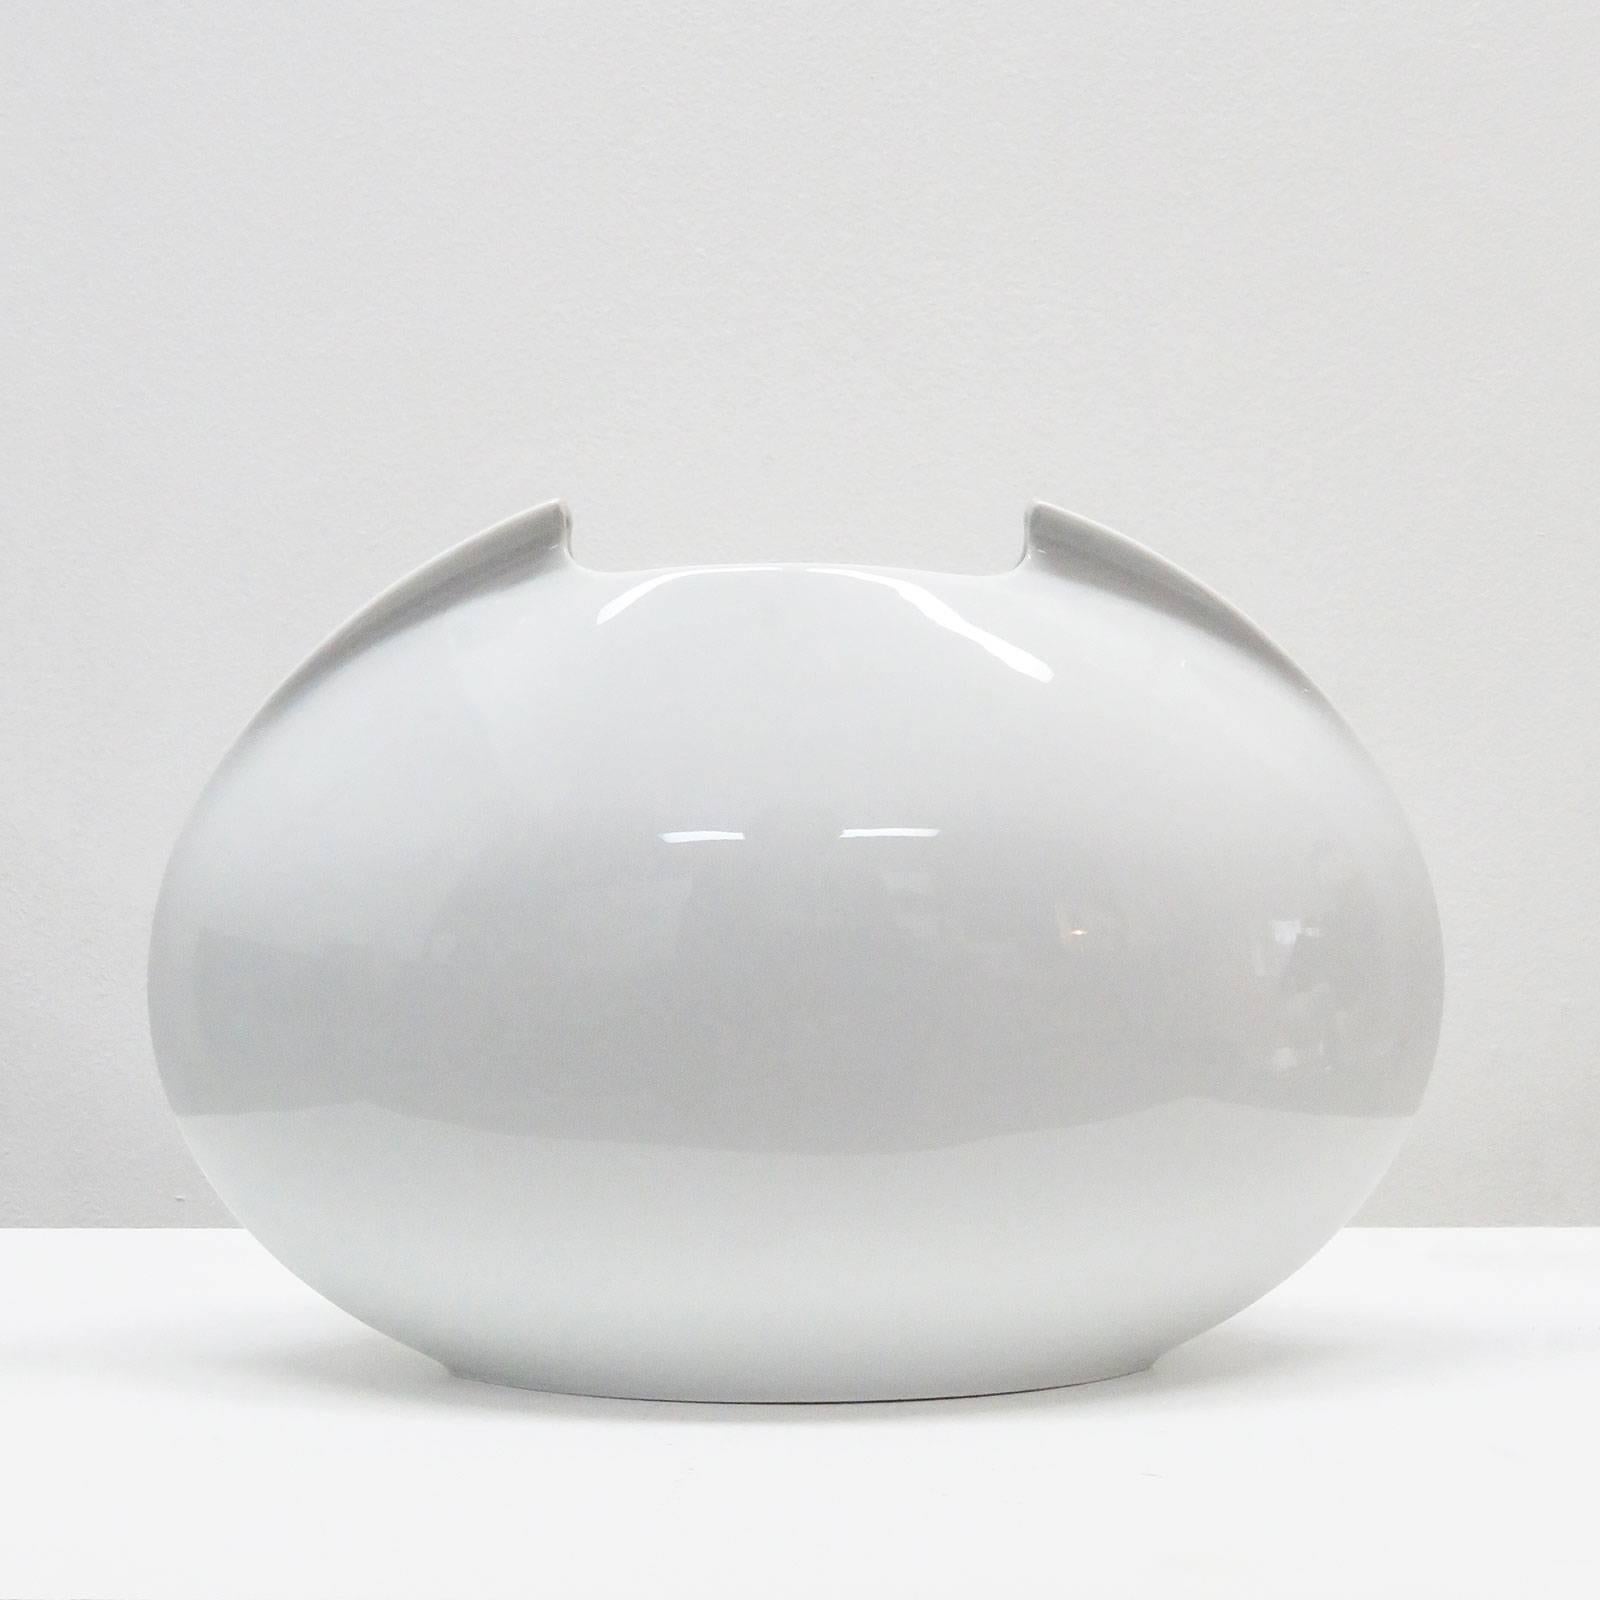 Elegant white glazed porcelain vase by Lino Sabattini for Rosenthal, marked.